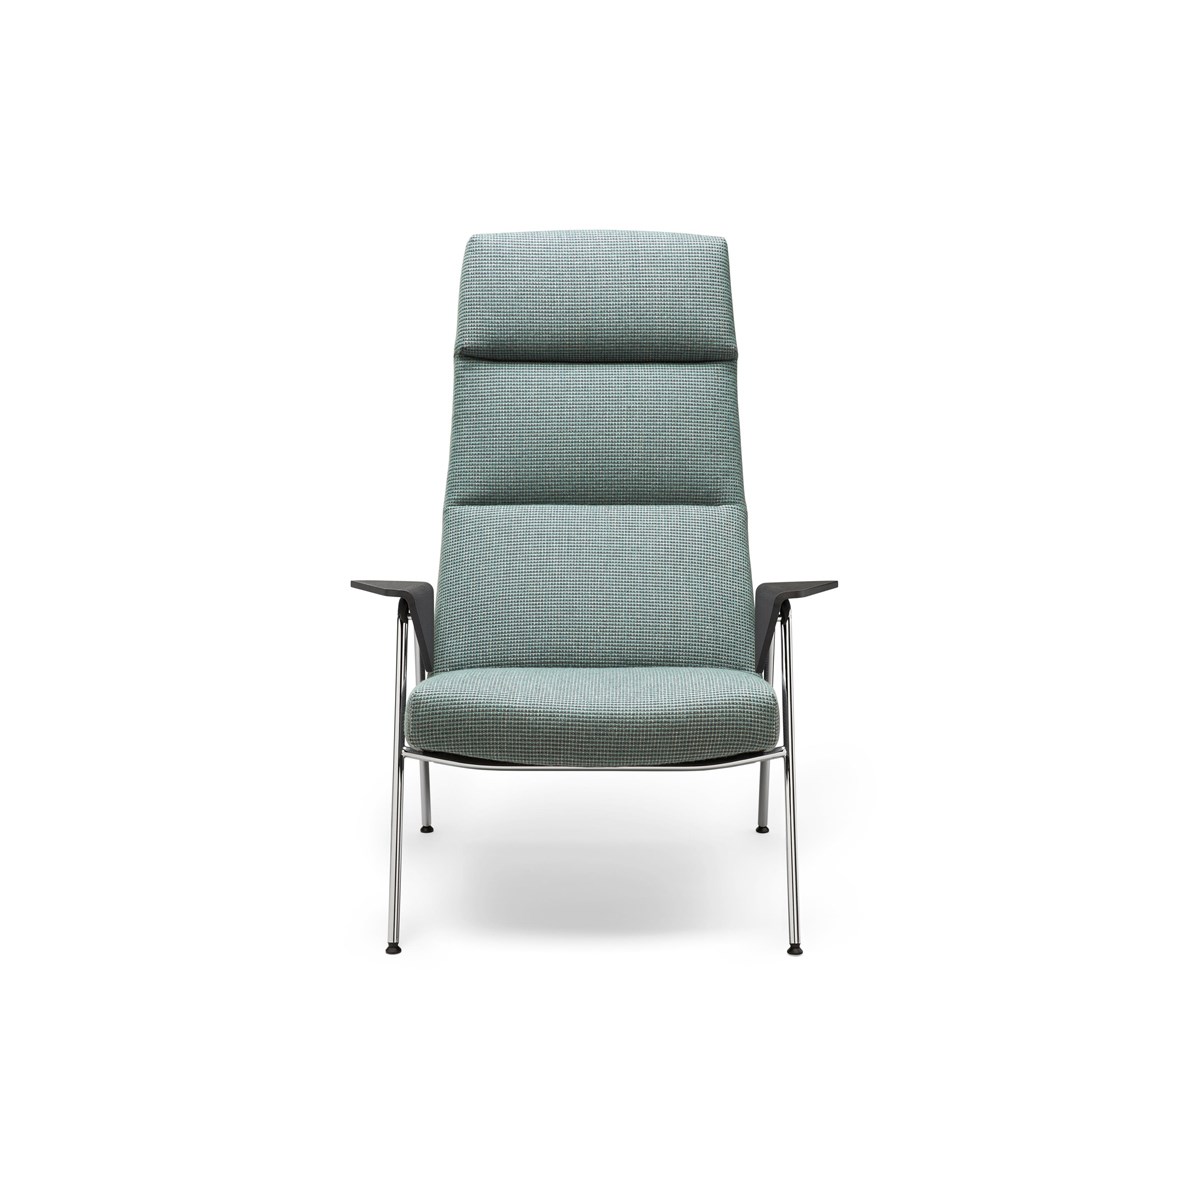 Thiswalter K Votteler Lounge Chair Arno Votteler 1400X800 3